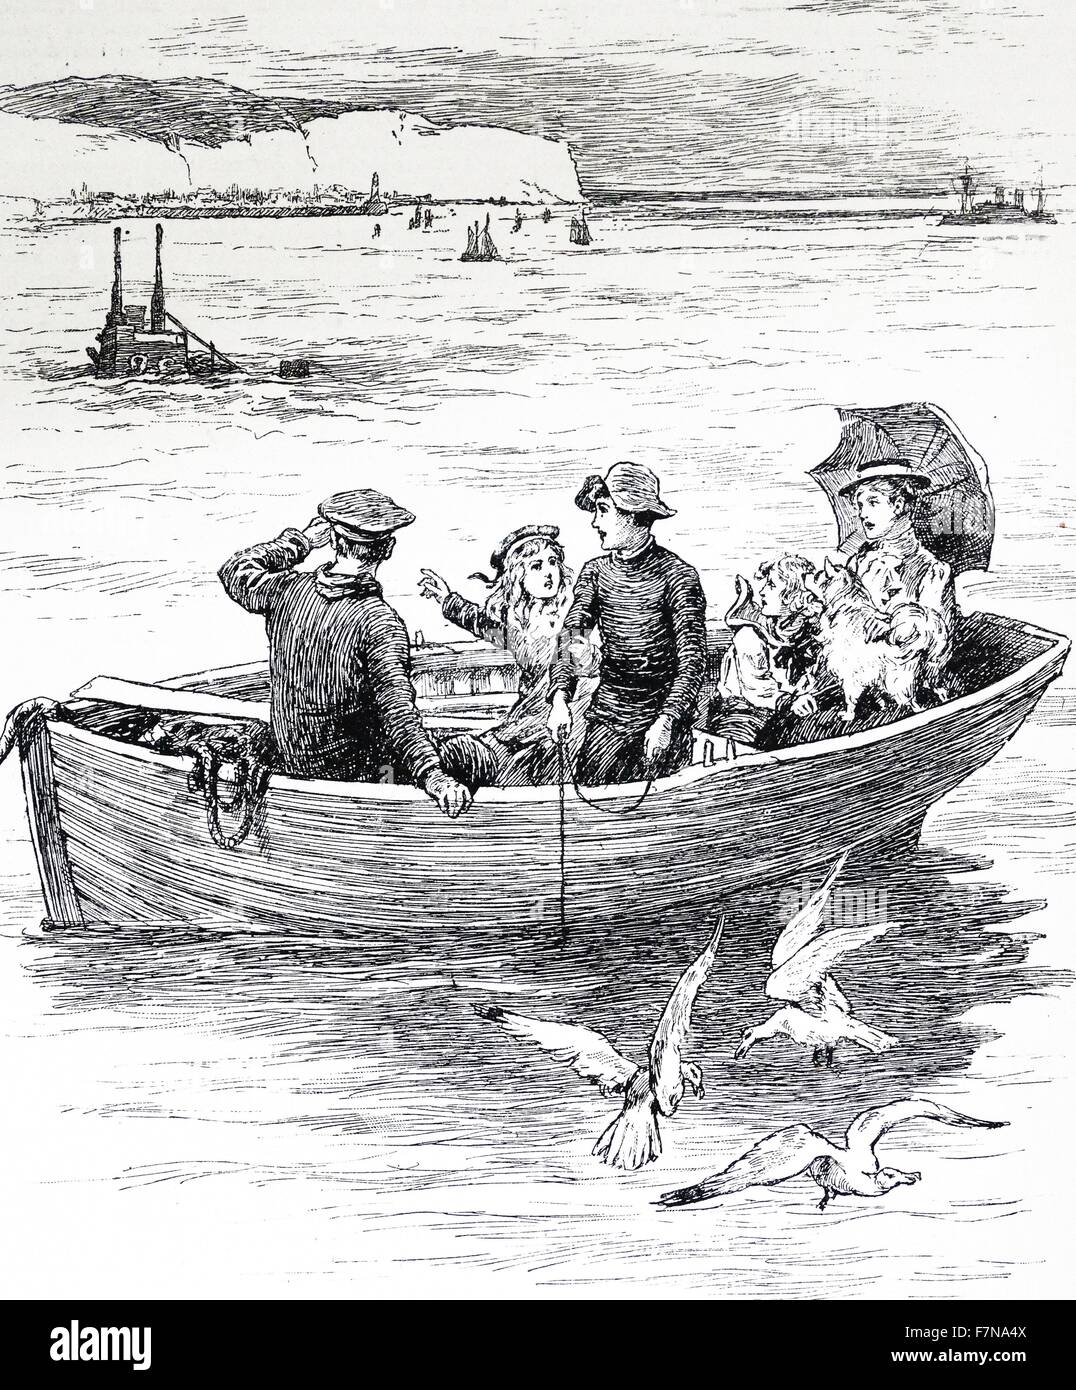 Abbildung aus einem Buch Darstellung Kinder oben auf einem u-Boot vor der Küste von Dover hingewiesen. U-Boote wurden in weit verbreiteten Einsatz während des frühen 20. Jahrhunderts genommen. Stockfoto